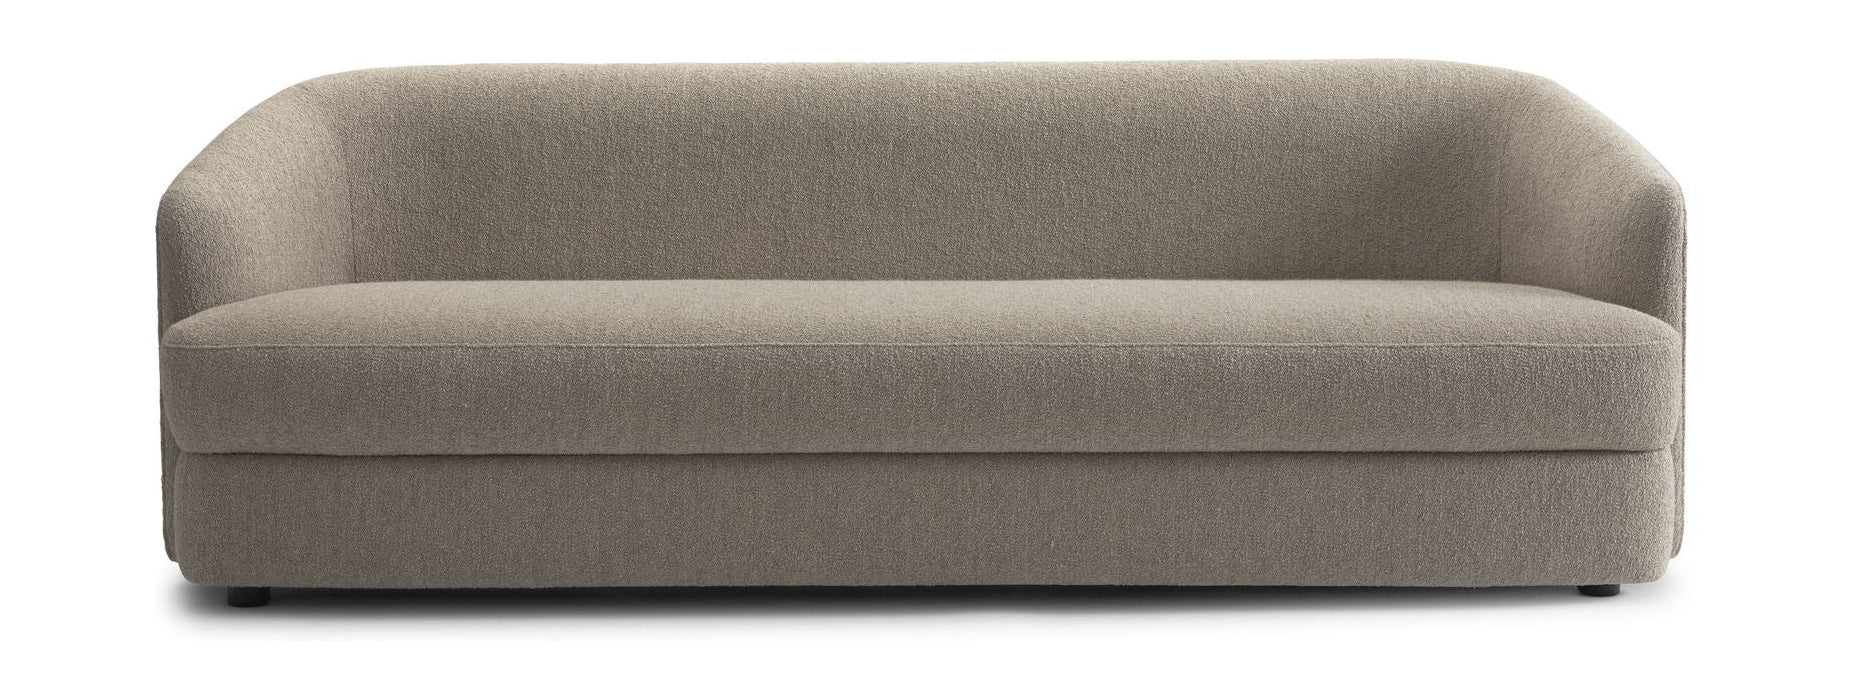 Nye værker covent sofa 3 sæder, hamp